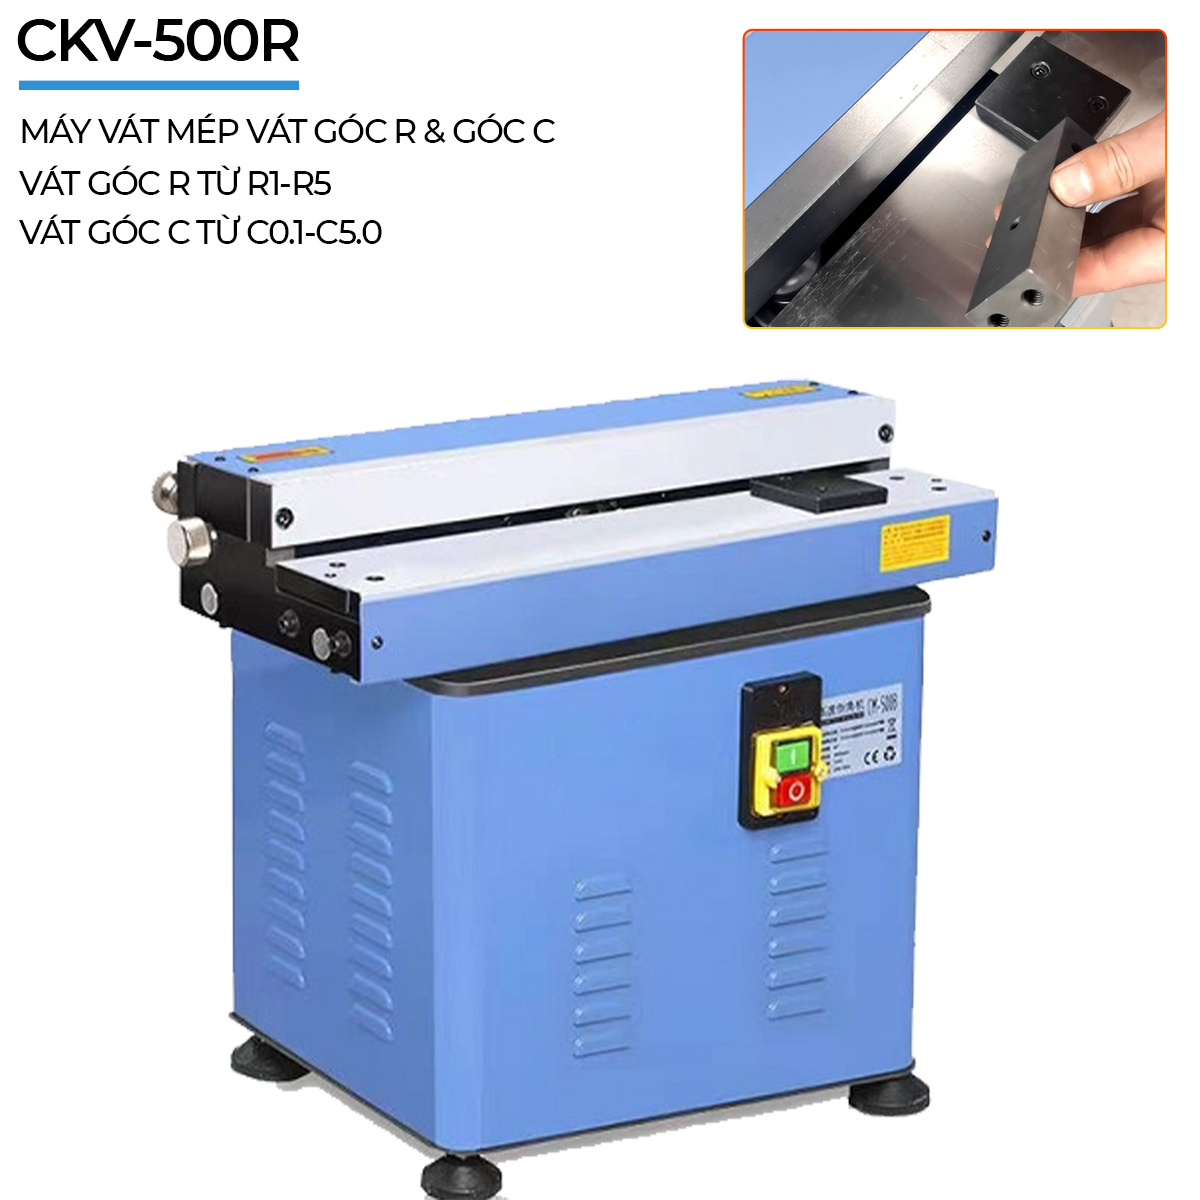 Ngoại quan của máy vát mép để bàn CKV-500R